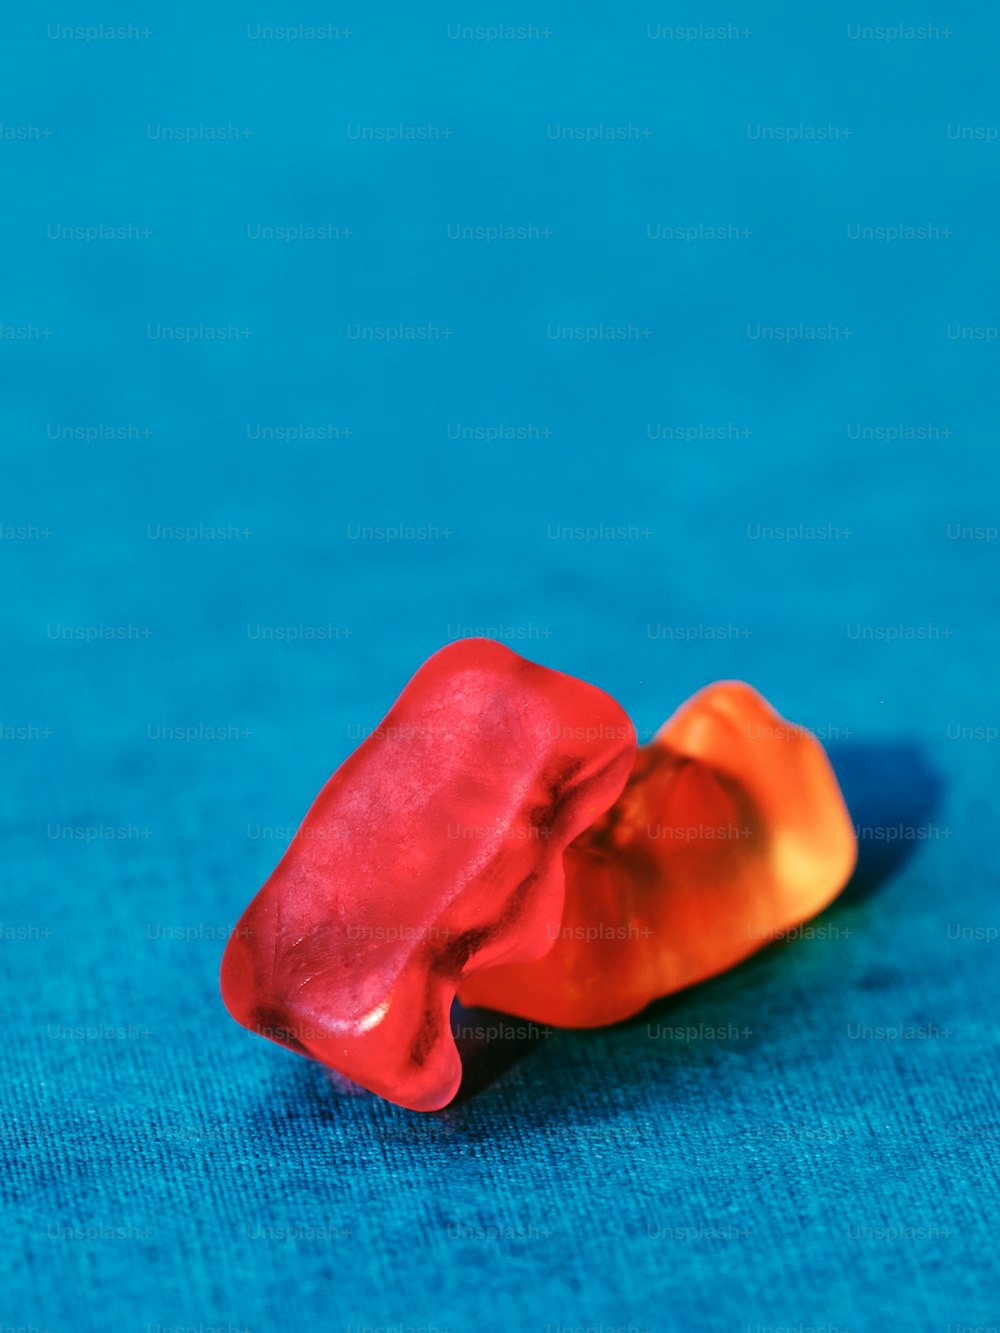 un objet rouge et orange posé sur une surface bleue